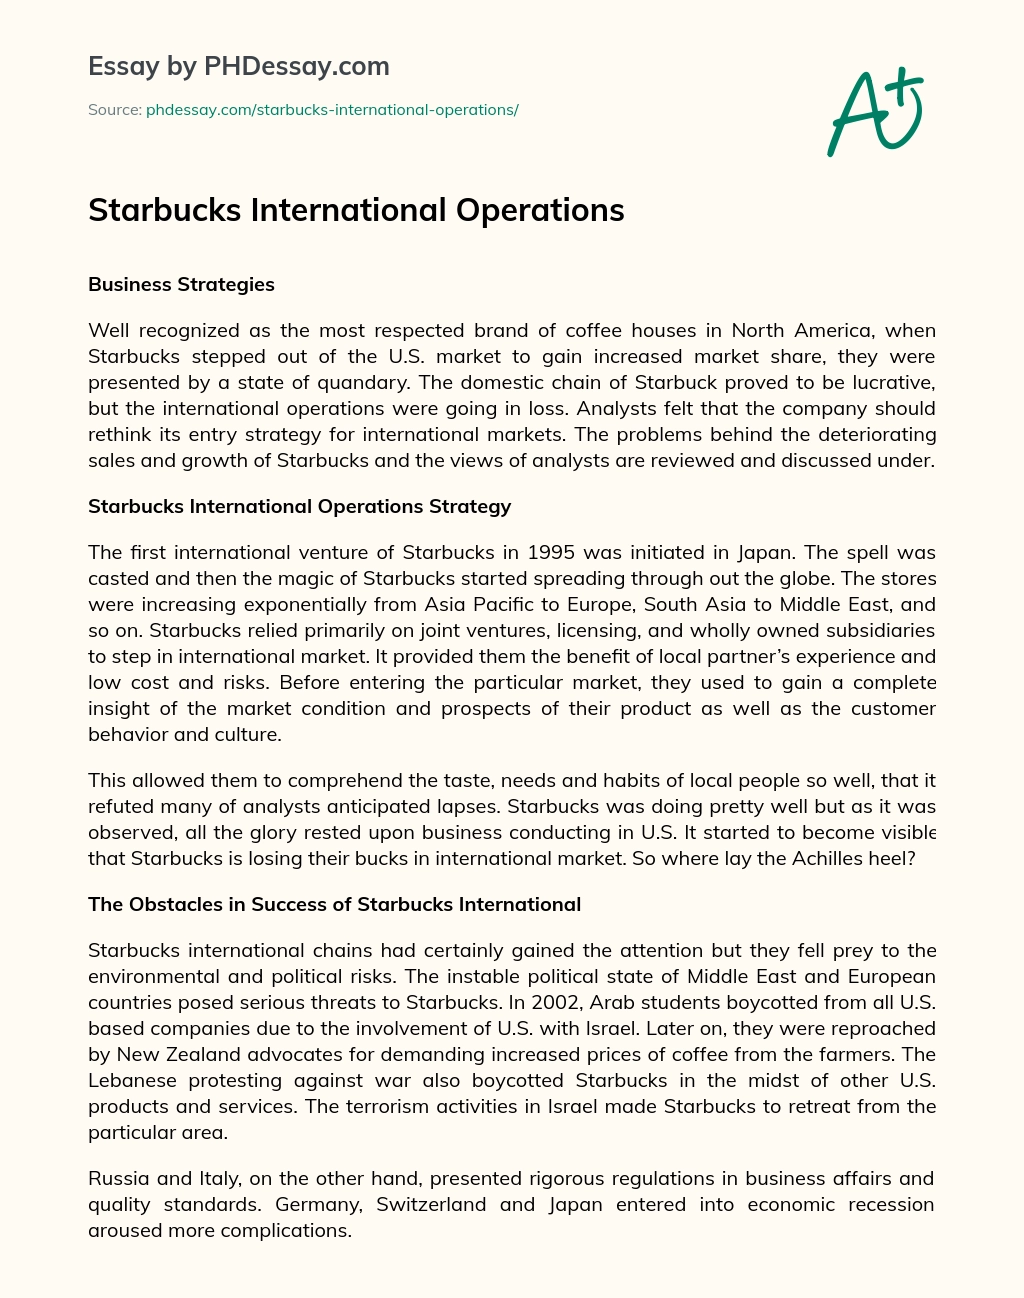 Starbucks International Operations essay